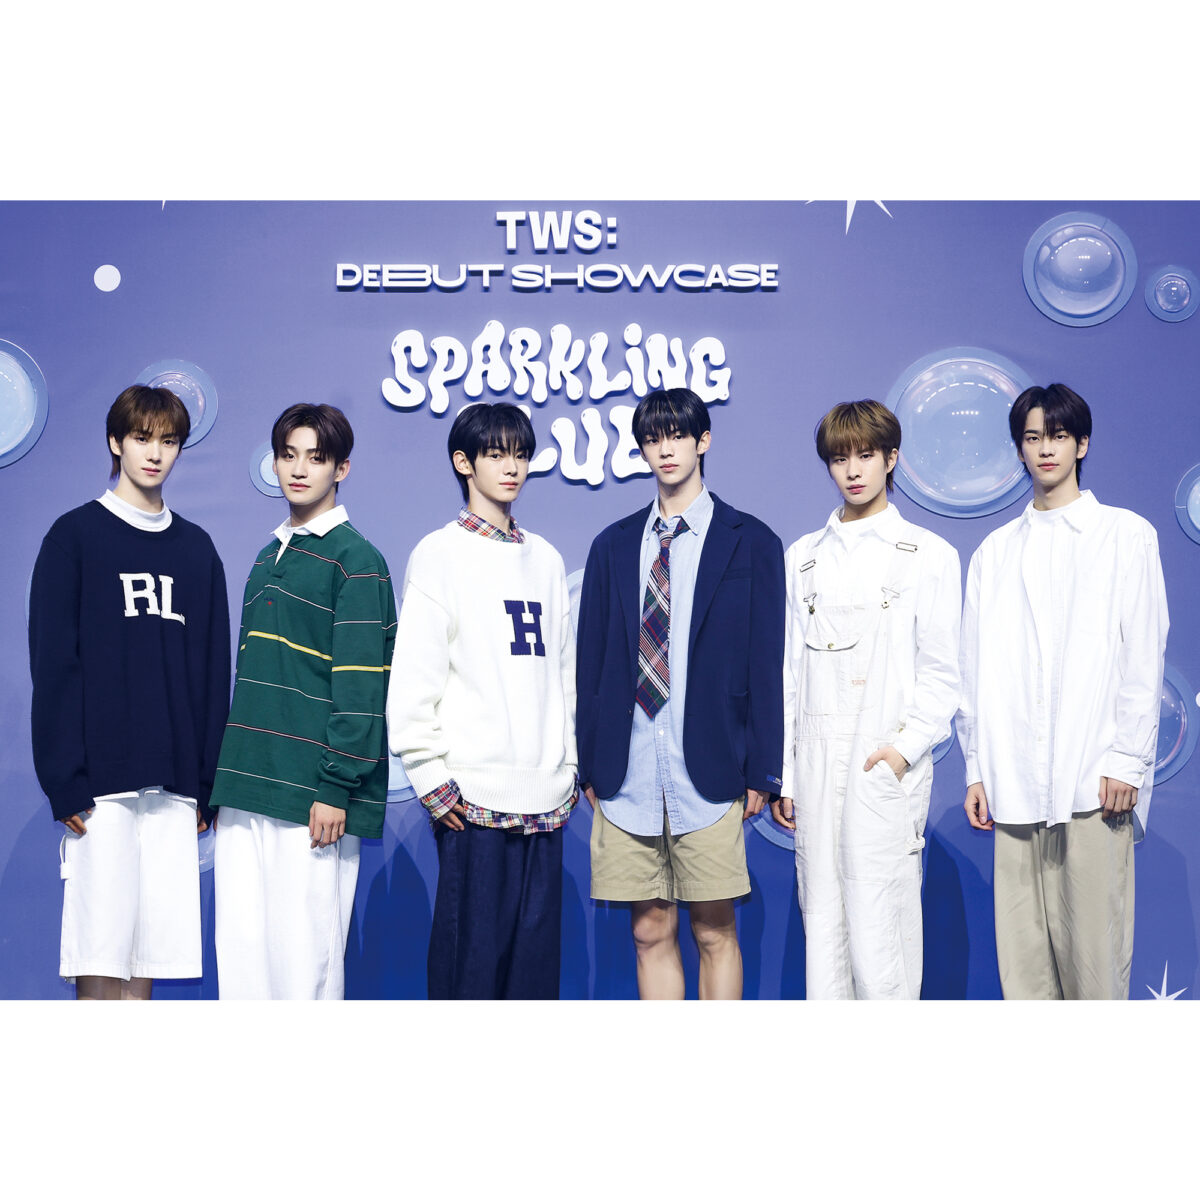 SEVENTEENの弟分グループ「TWS（トゥアス）」がついにデビュー。韓国で開催されたショ...